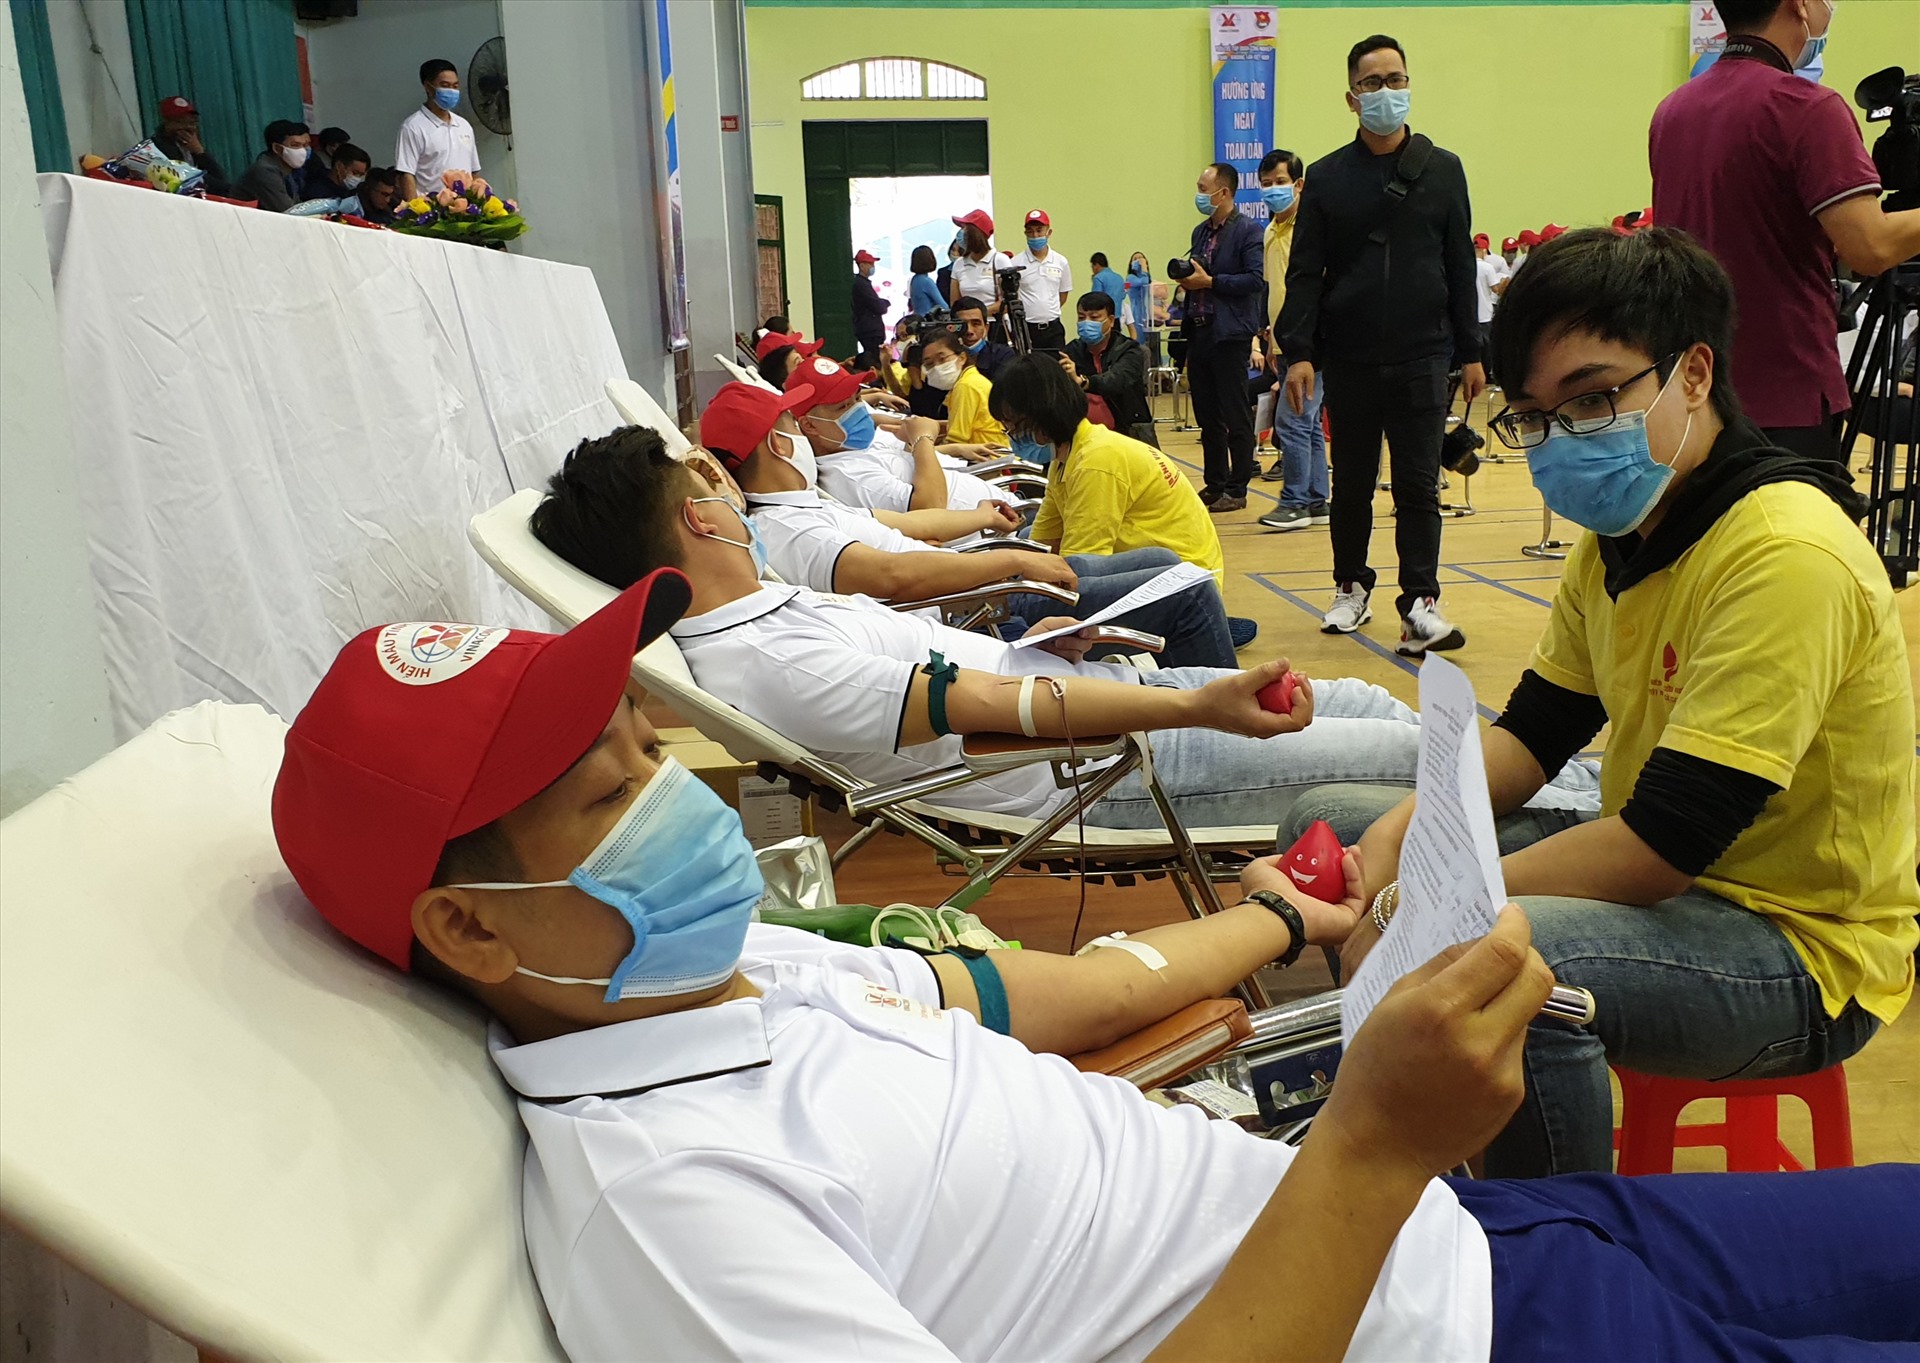 Dự kiến, đợt 1 sẽ có khoảng 350 đơn vị máu sẽ được chuyển cho Bệnh viện Việt Nam – Thụy Điển Uông Bí, góp phần phục vụ công tác điều trị và cấp cứu người bệnh. Ảnh: Nguyễn Hùng